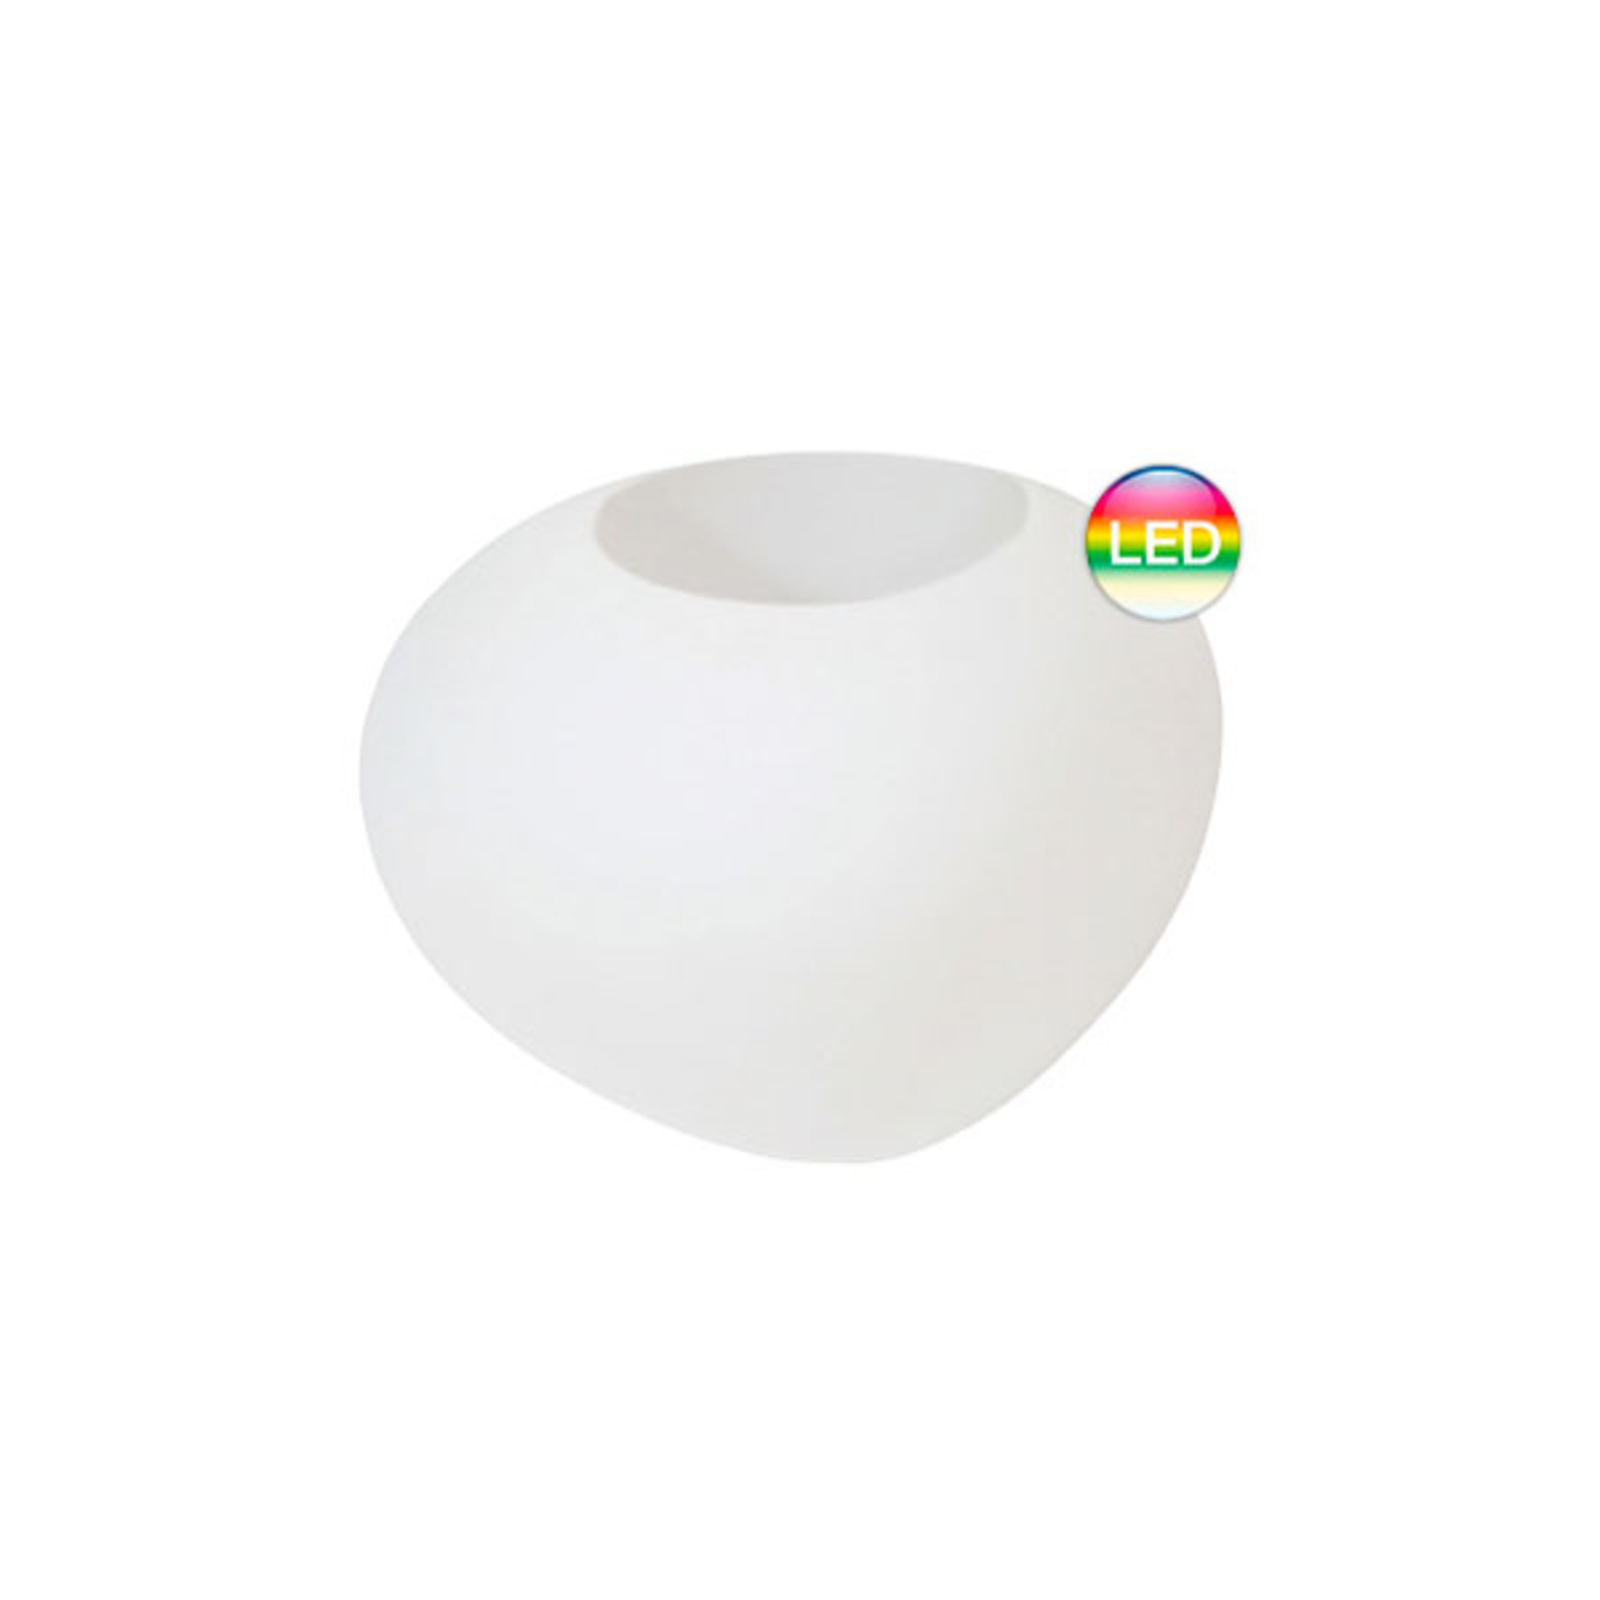 Storus VII LED RGBW dekoratív lámpa, fehér színben ültethető